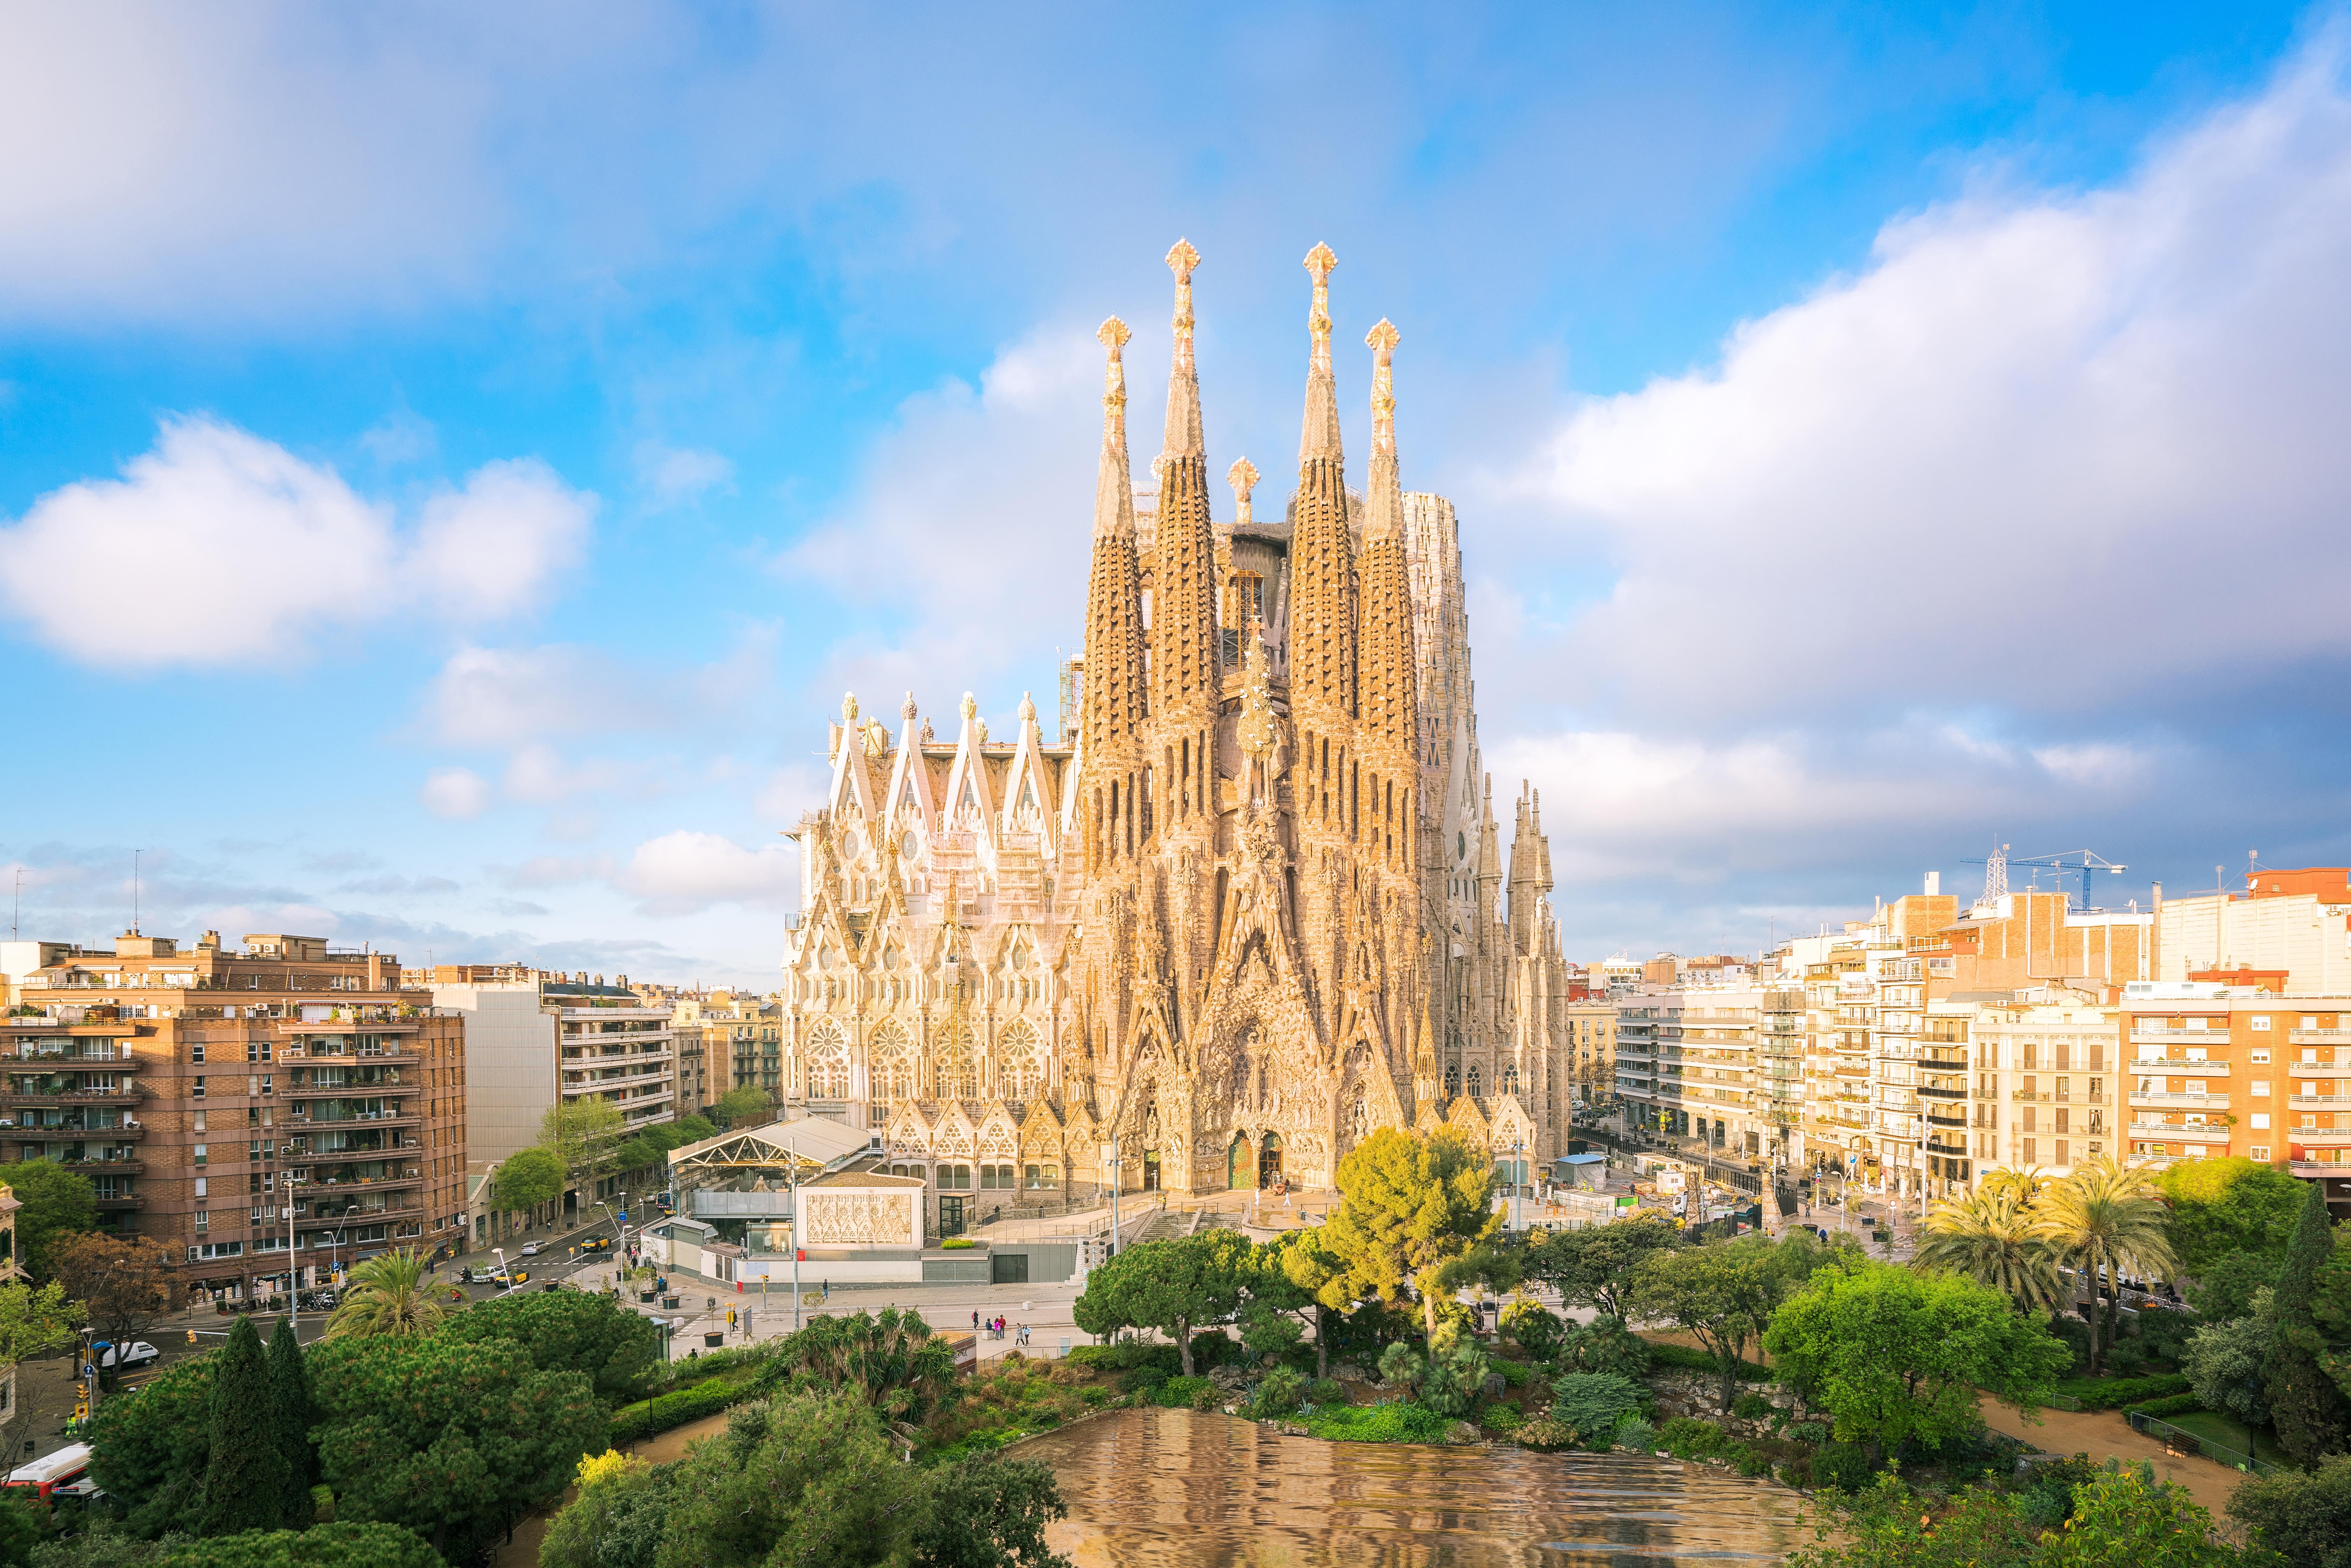 Iconic La Sagrada Familia in Barcelona